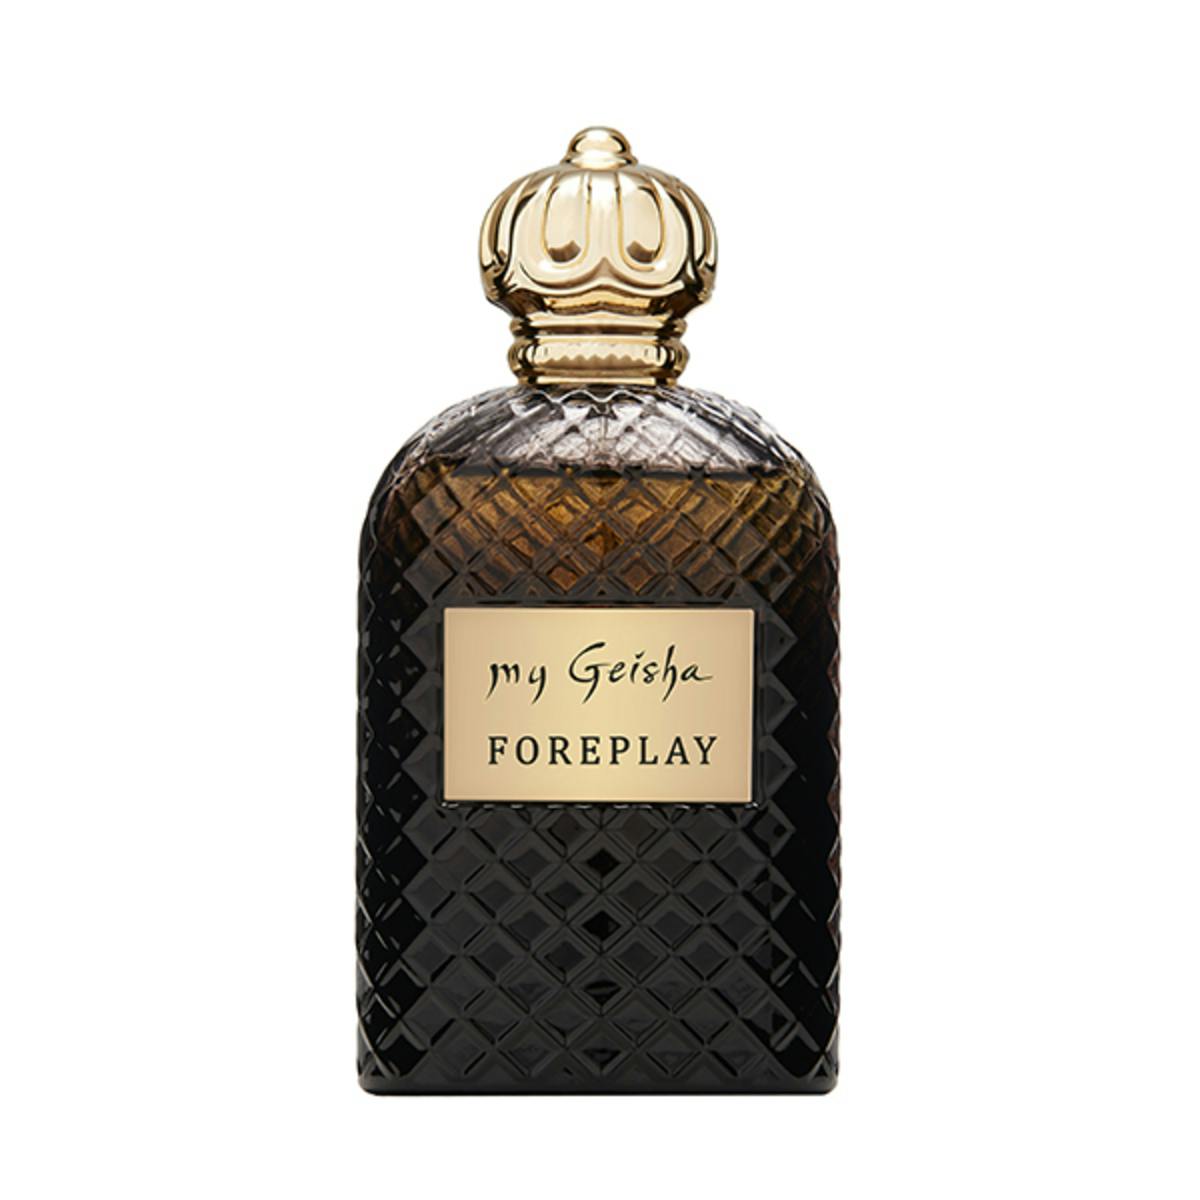 Extrait de parfum "Foreplay" 100 ml, produit artisanal en vente directe en Suisse